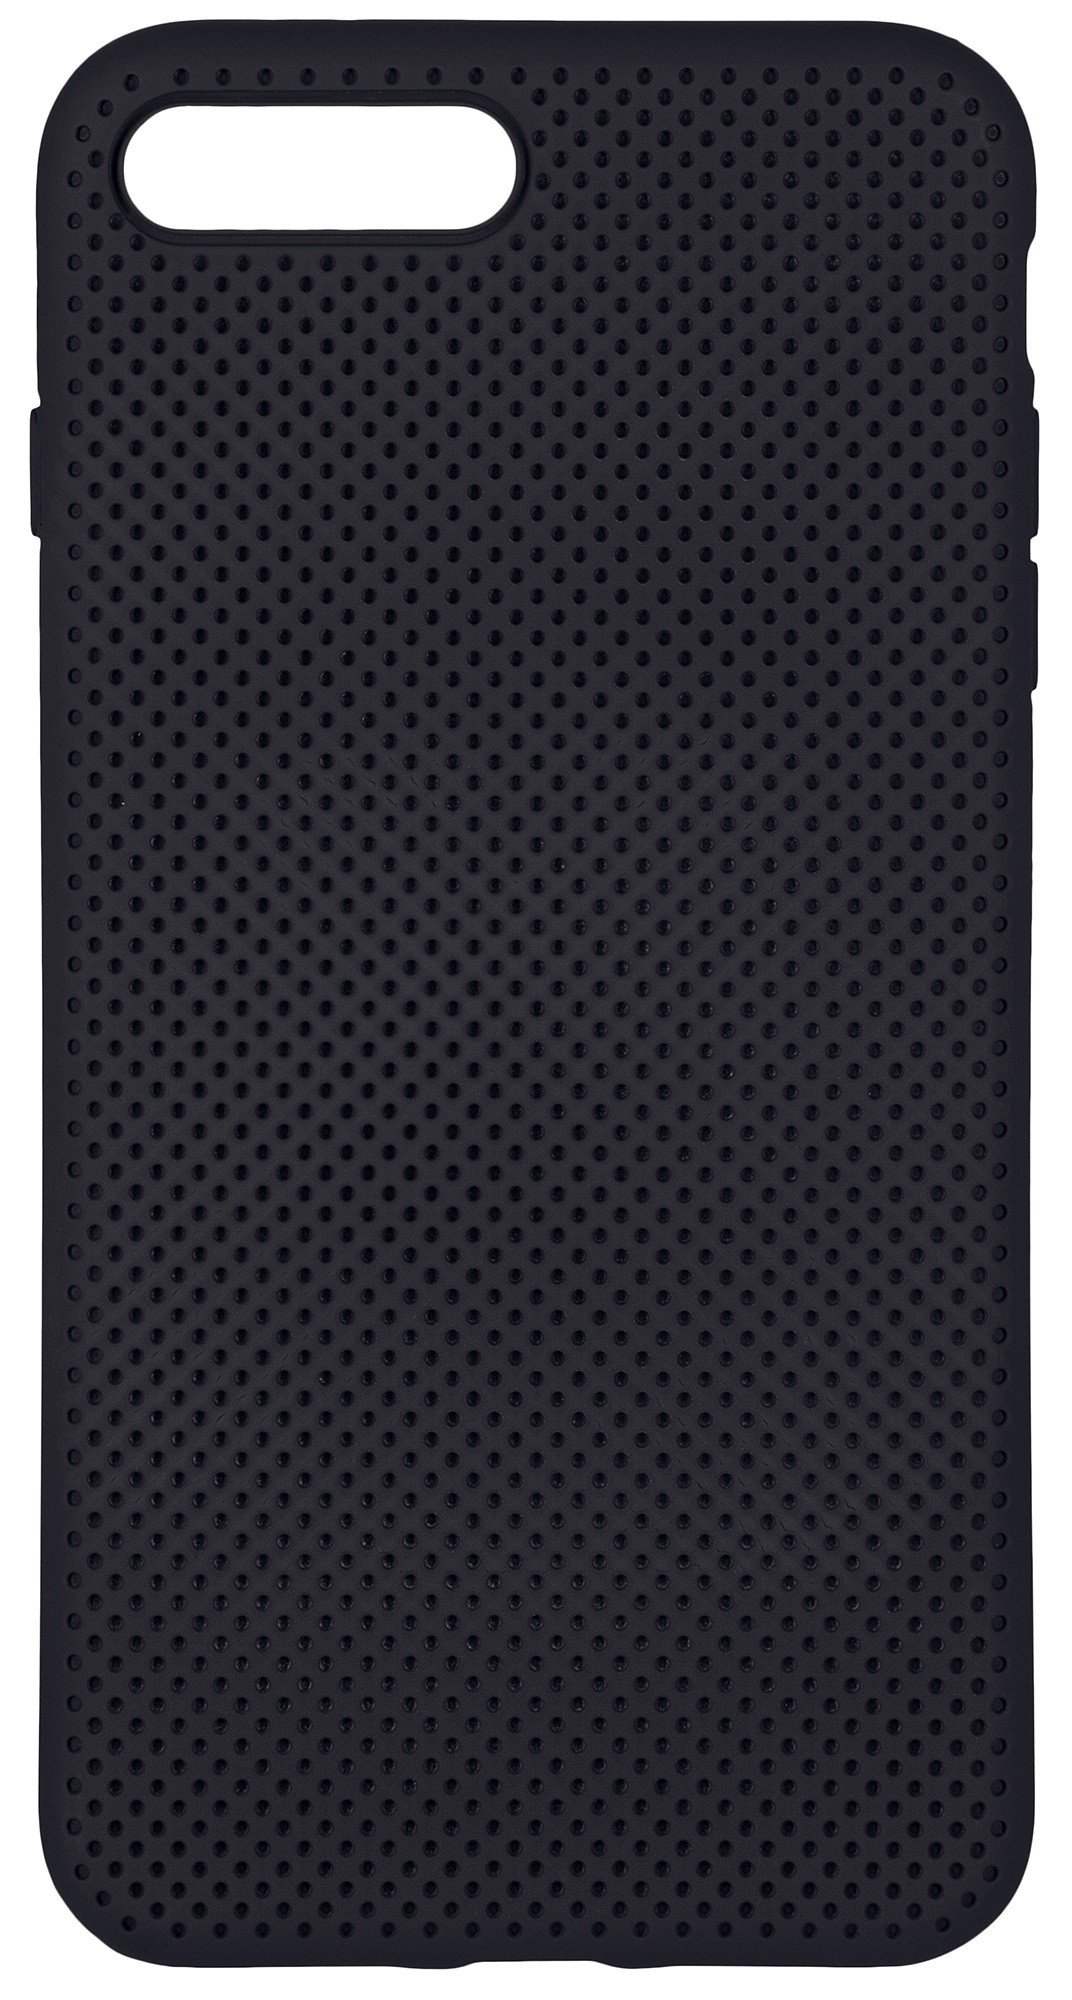 Чехол 2Е для iPhone 8 Plus/7 Plus Dots Black фото 1